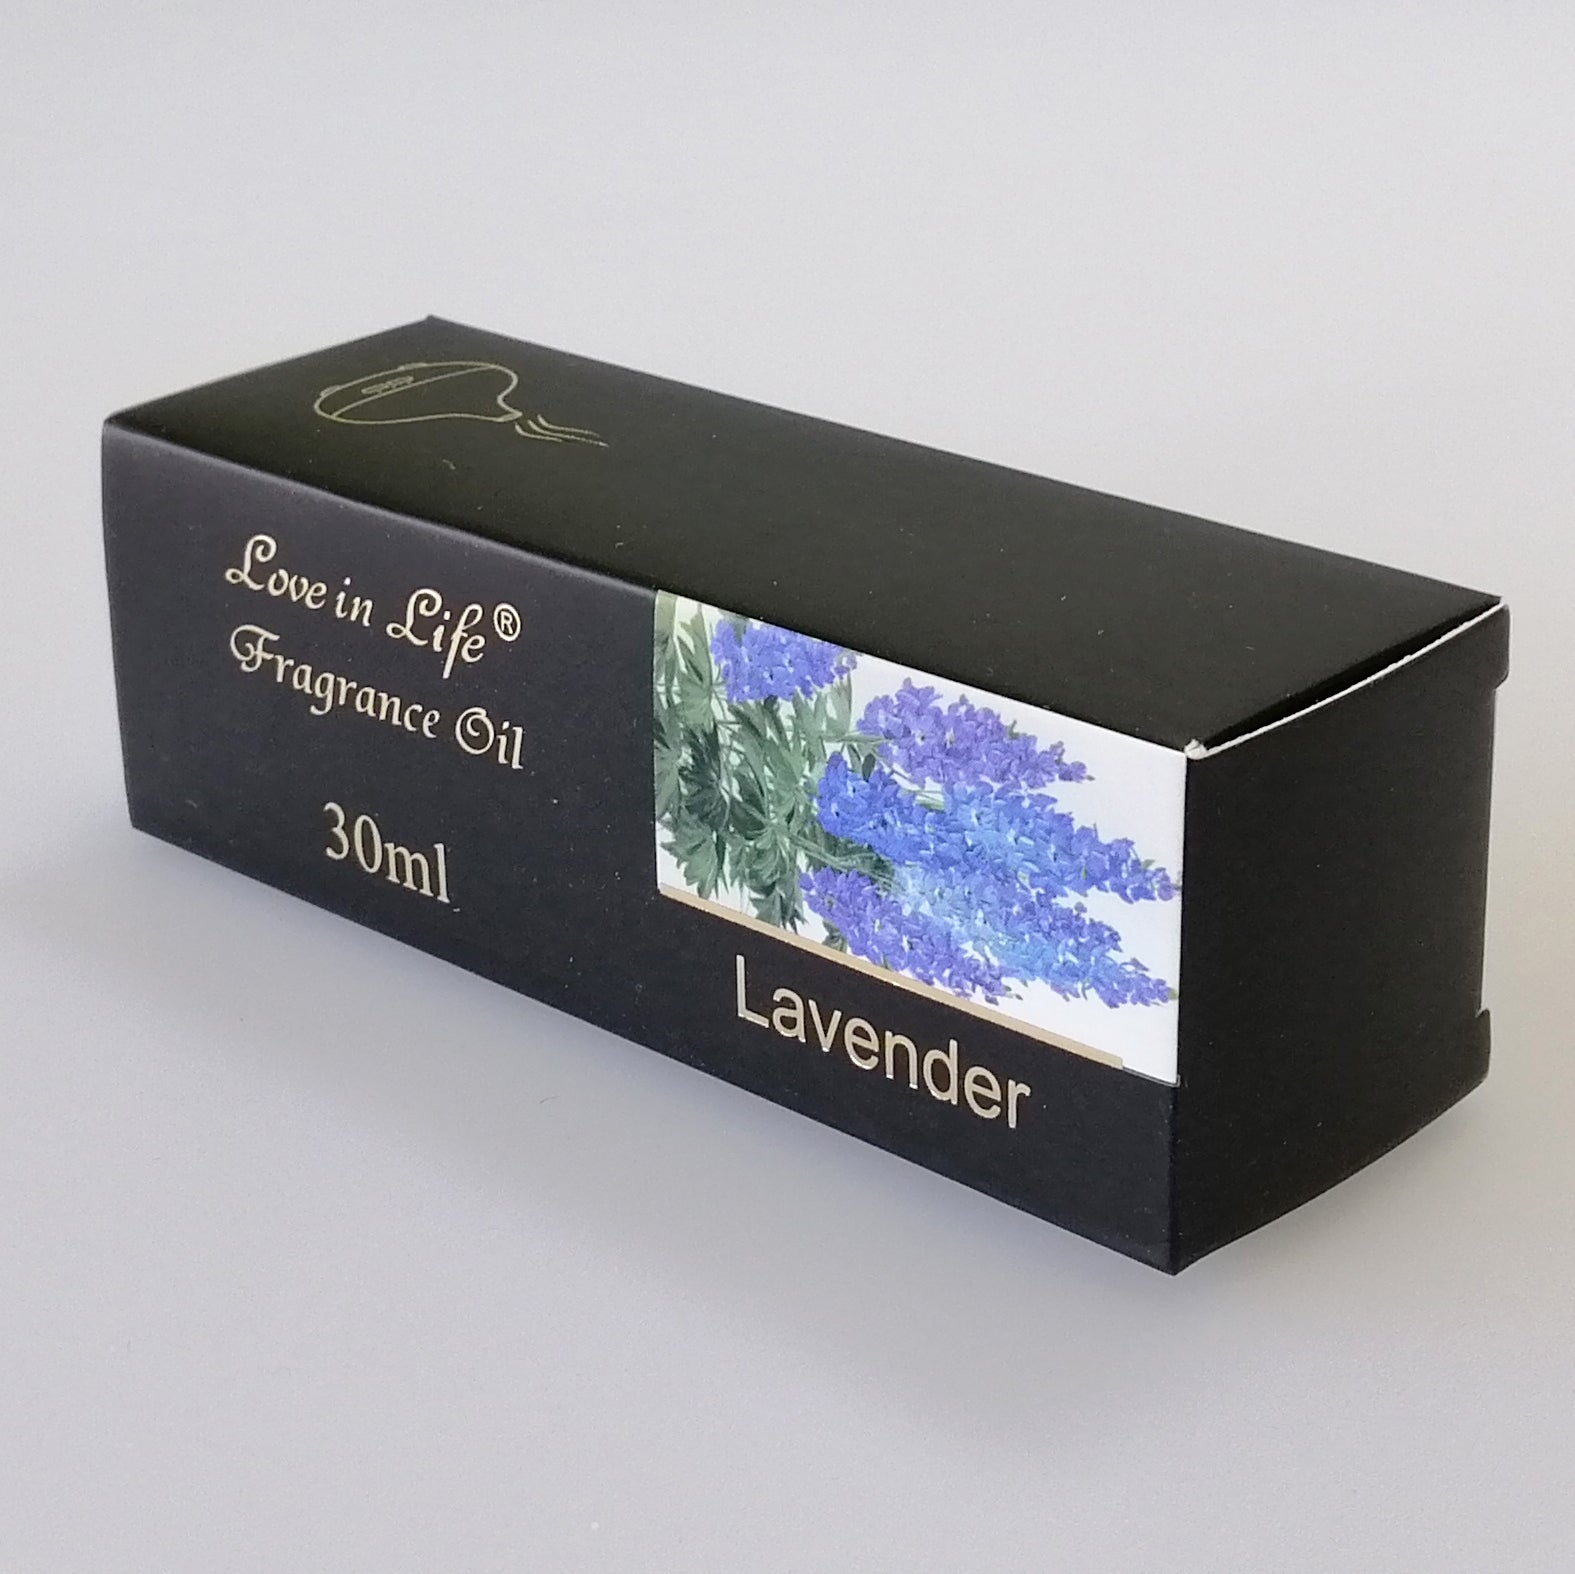 Love in Life - Fragrance Oil - Lavender - 30ml